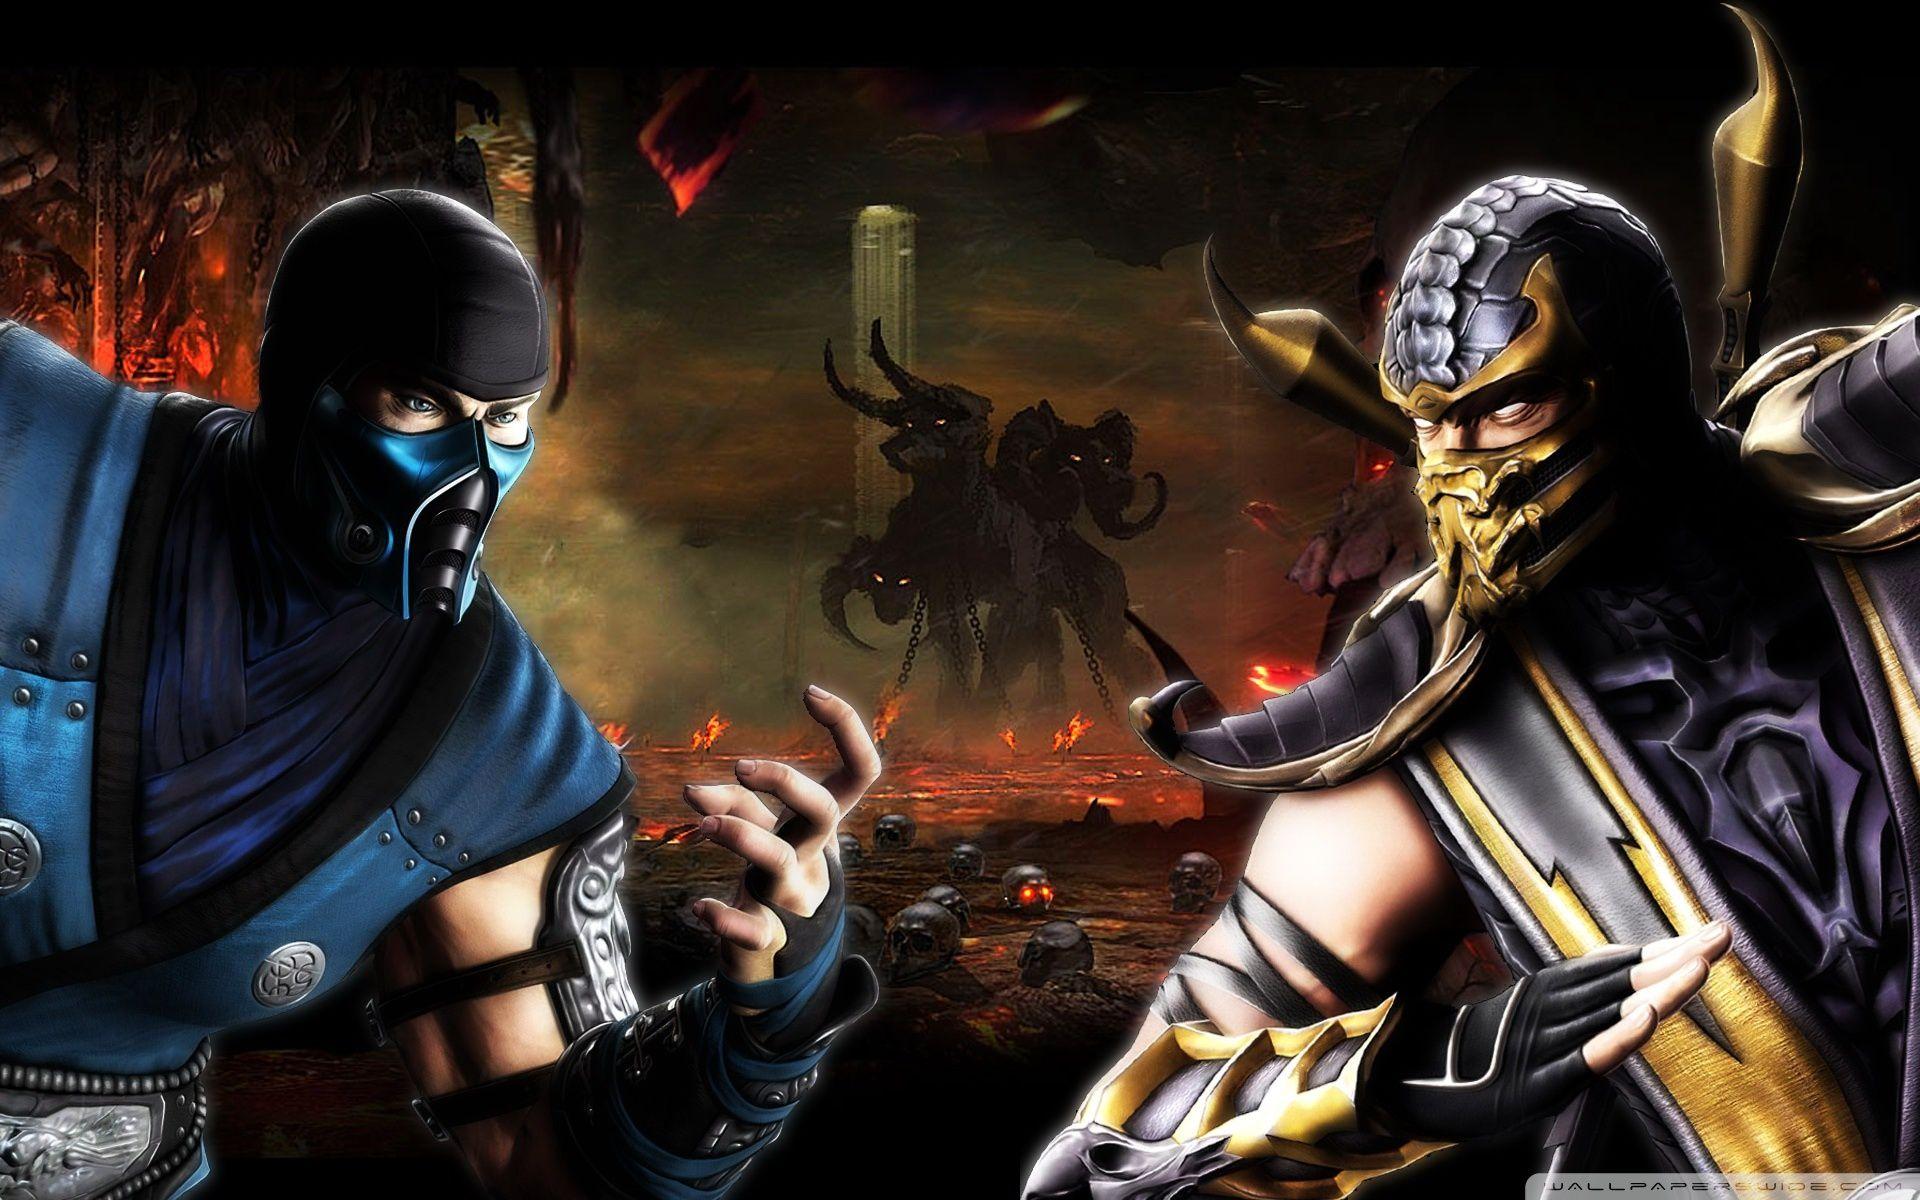 Поменять мортал комбат. Scorpion vs sub Zero MK 11. Mortal Kombat 9 саб Зиро. Скорпион против саб Зиро. Сабзиро мортал комбат.